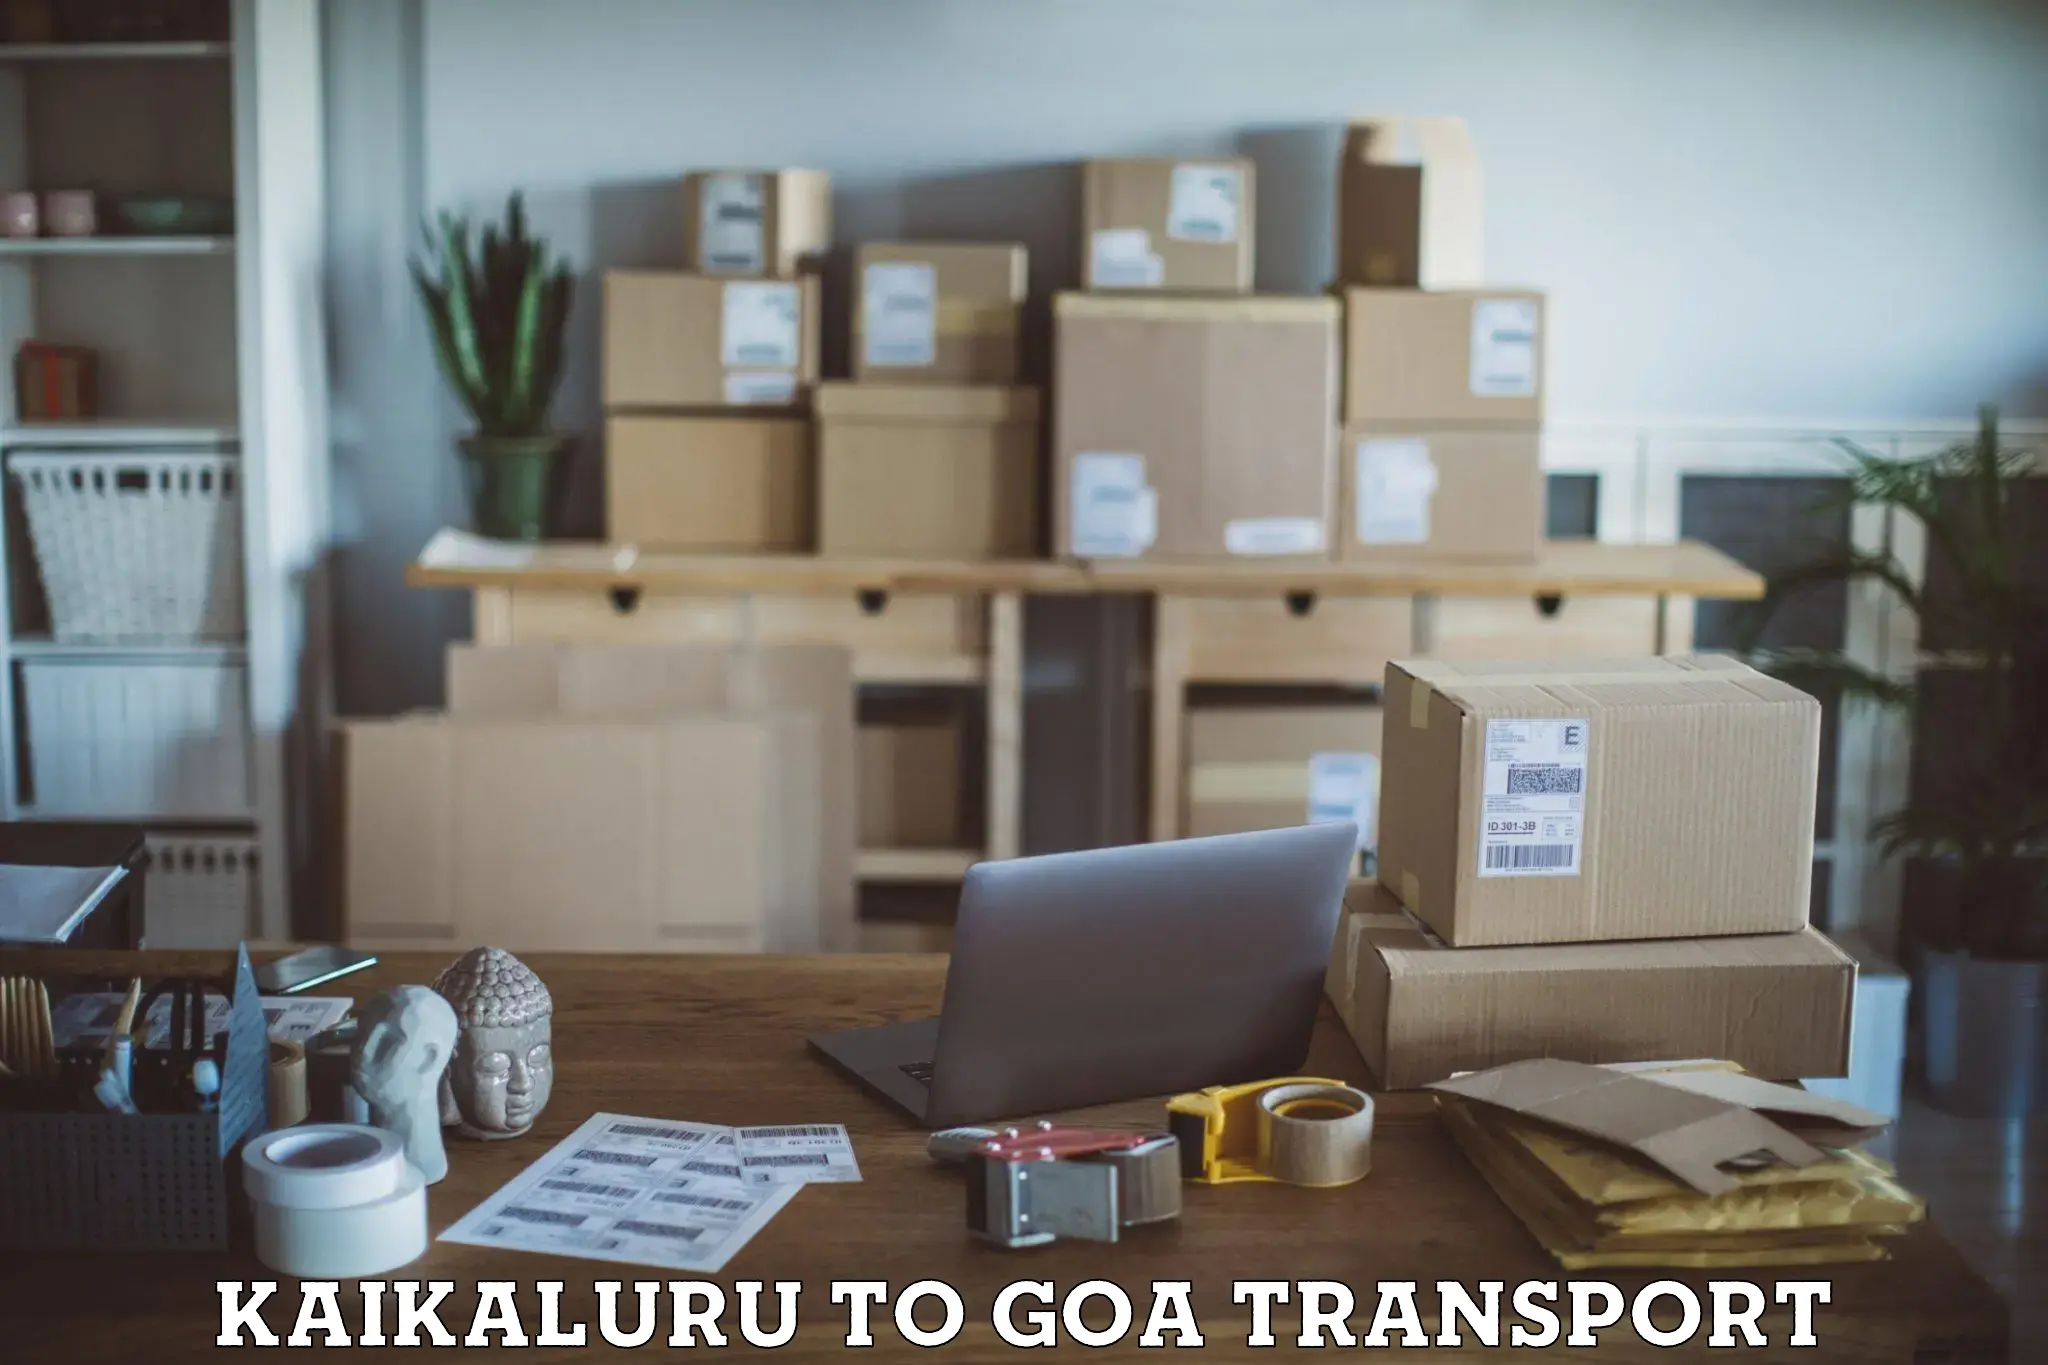 Two wheeler transport services Kaikaluru to Goa